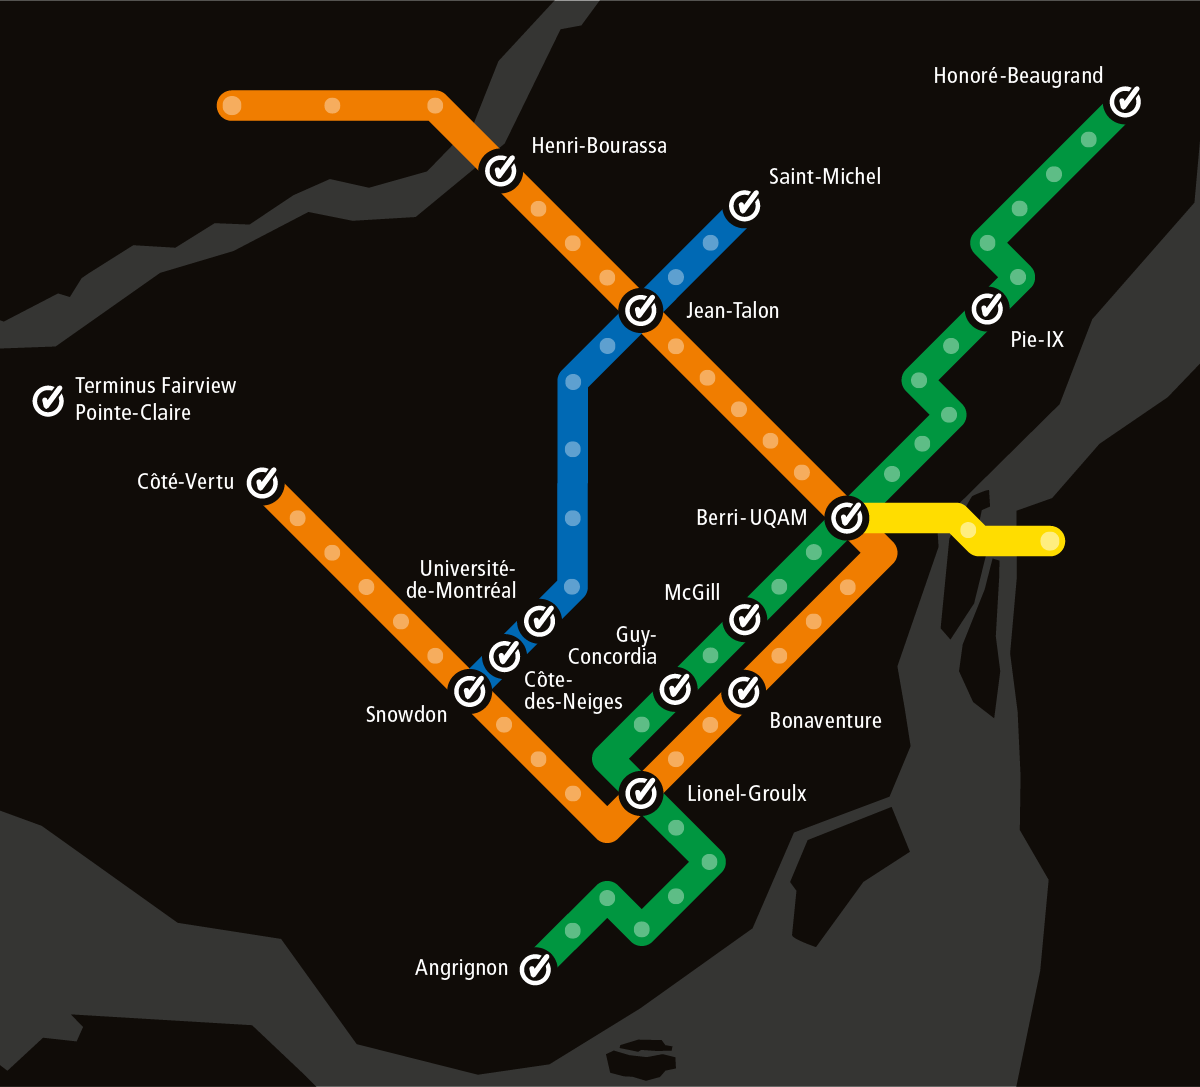 metro cartier carte opus